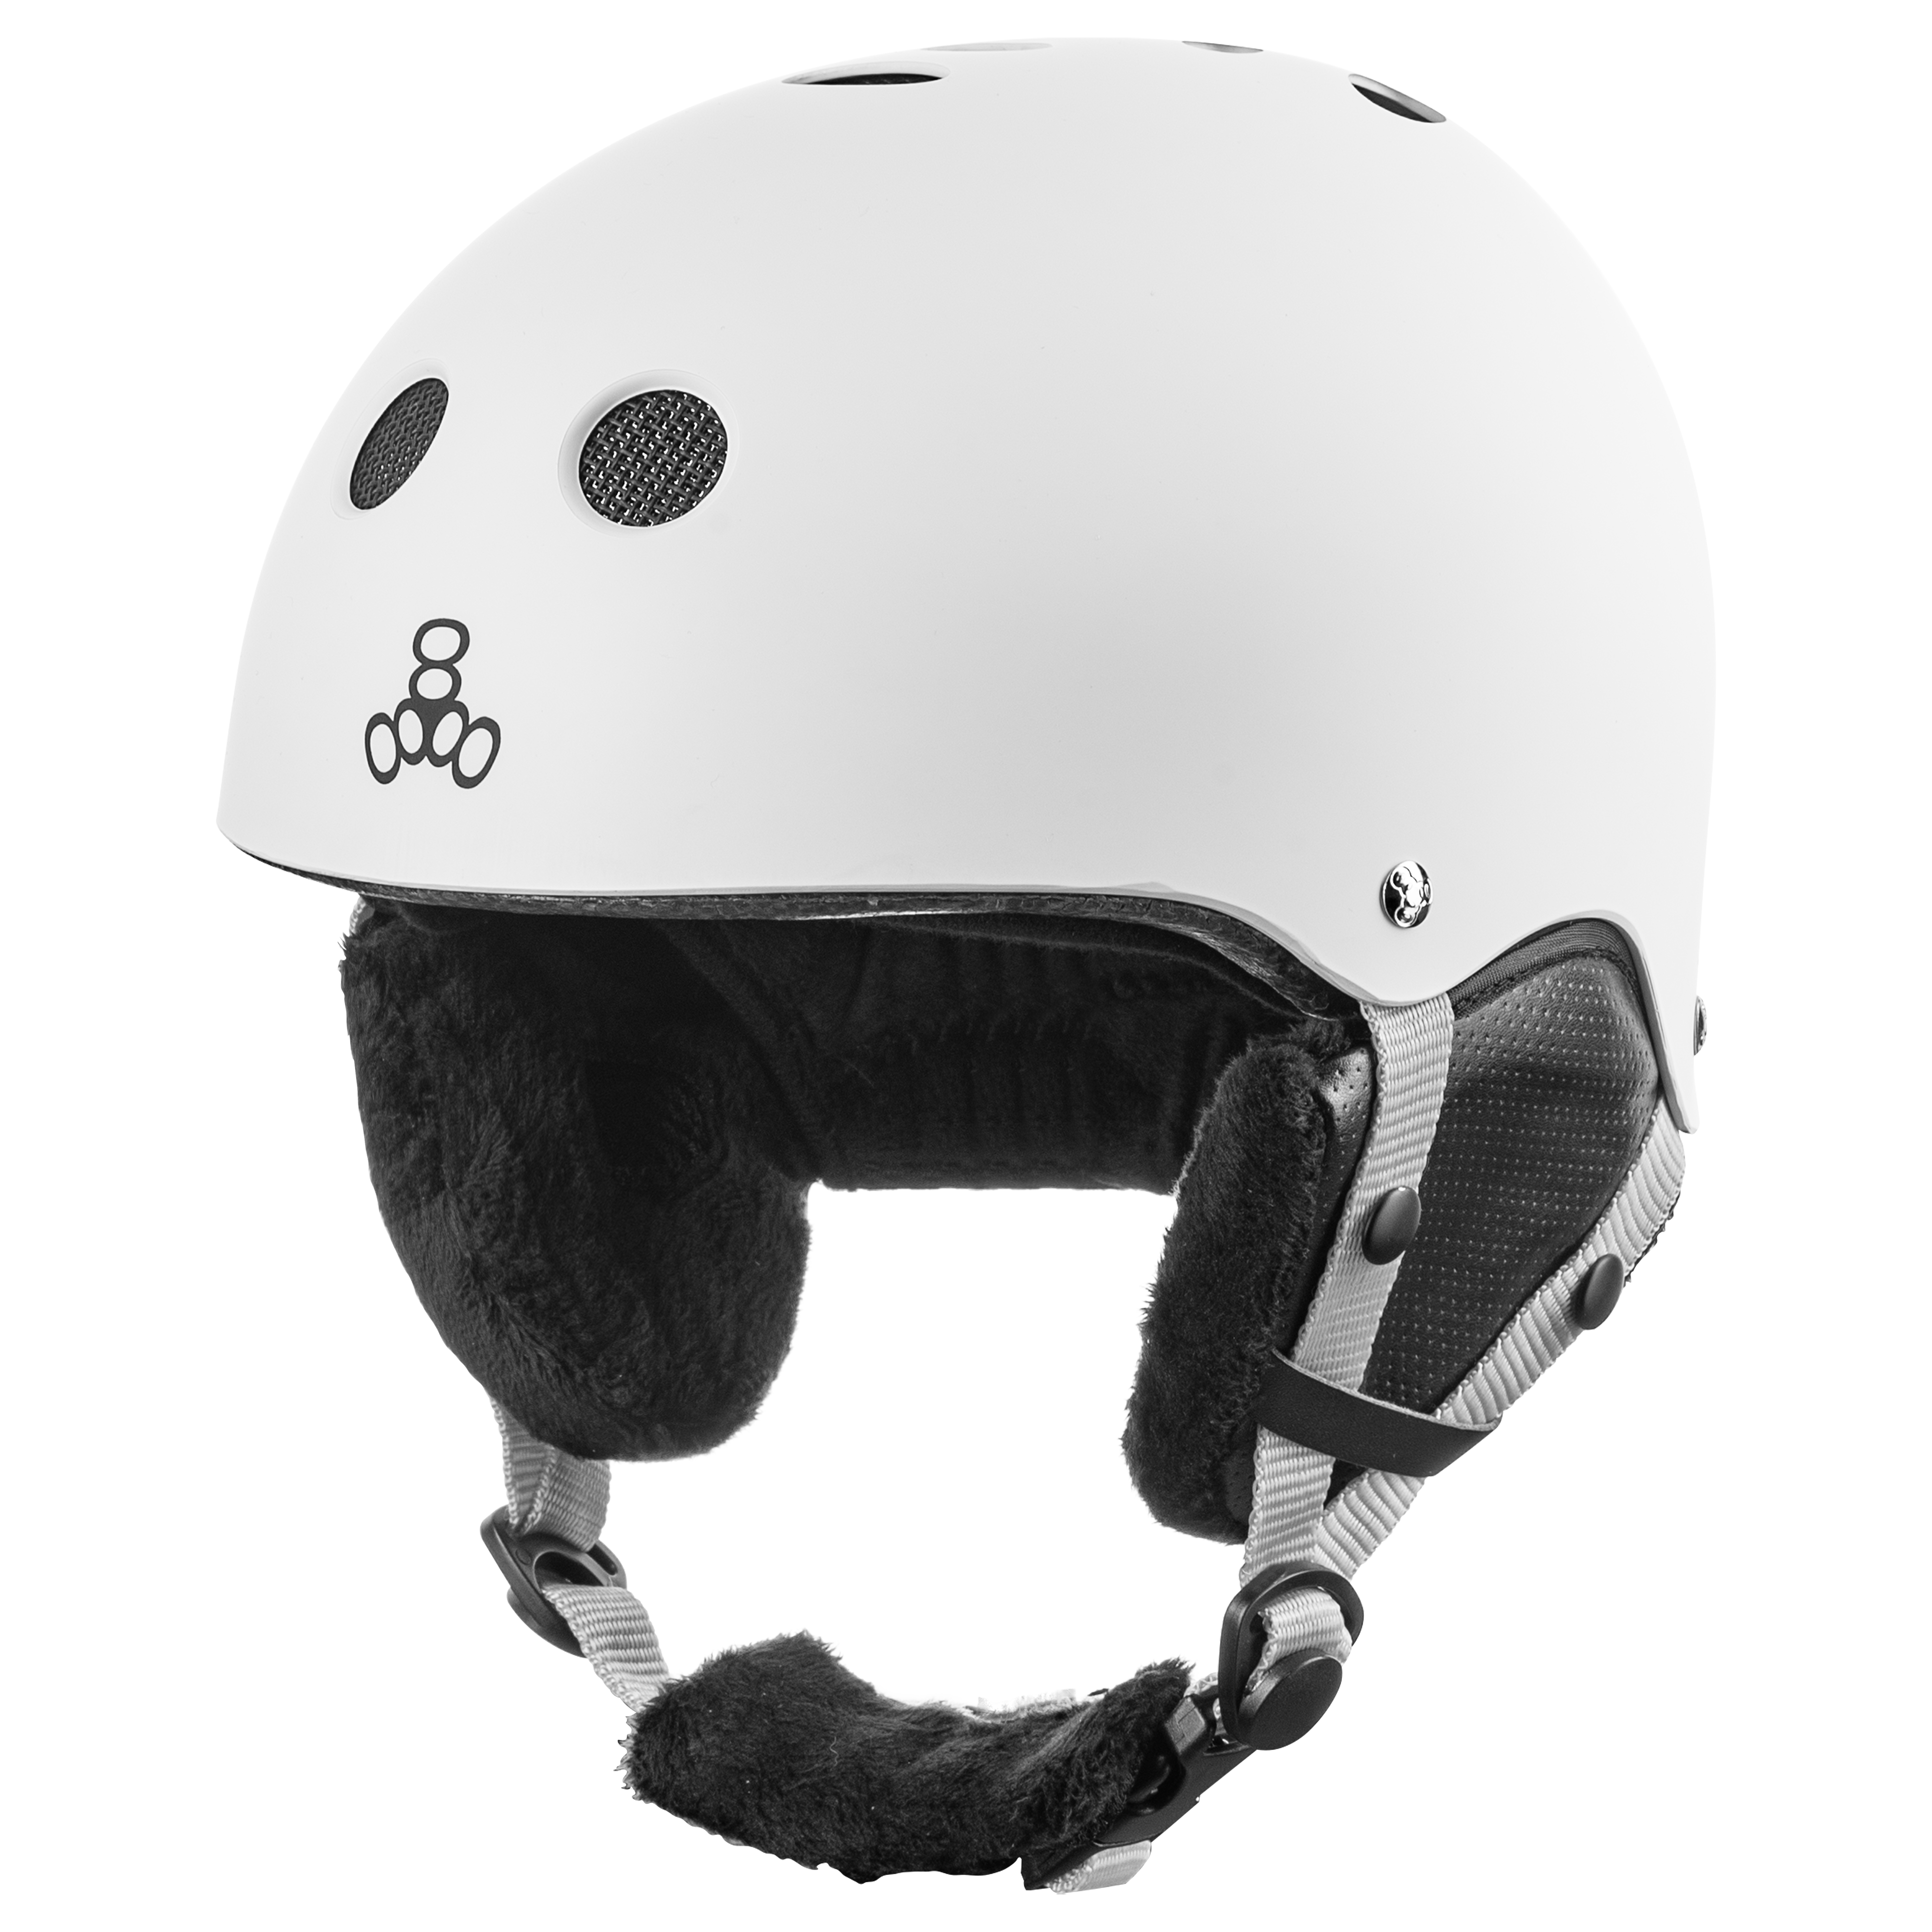 Купить шлем Triple8 Halo Snow Standart White Rubber (S/M) в Киеве